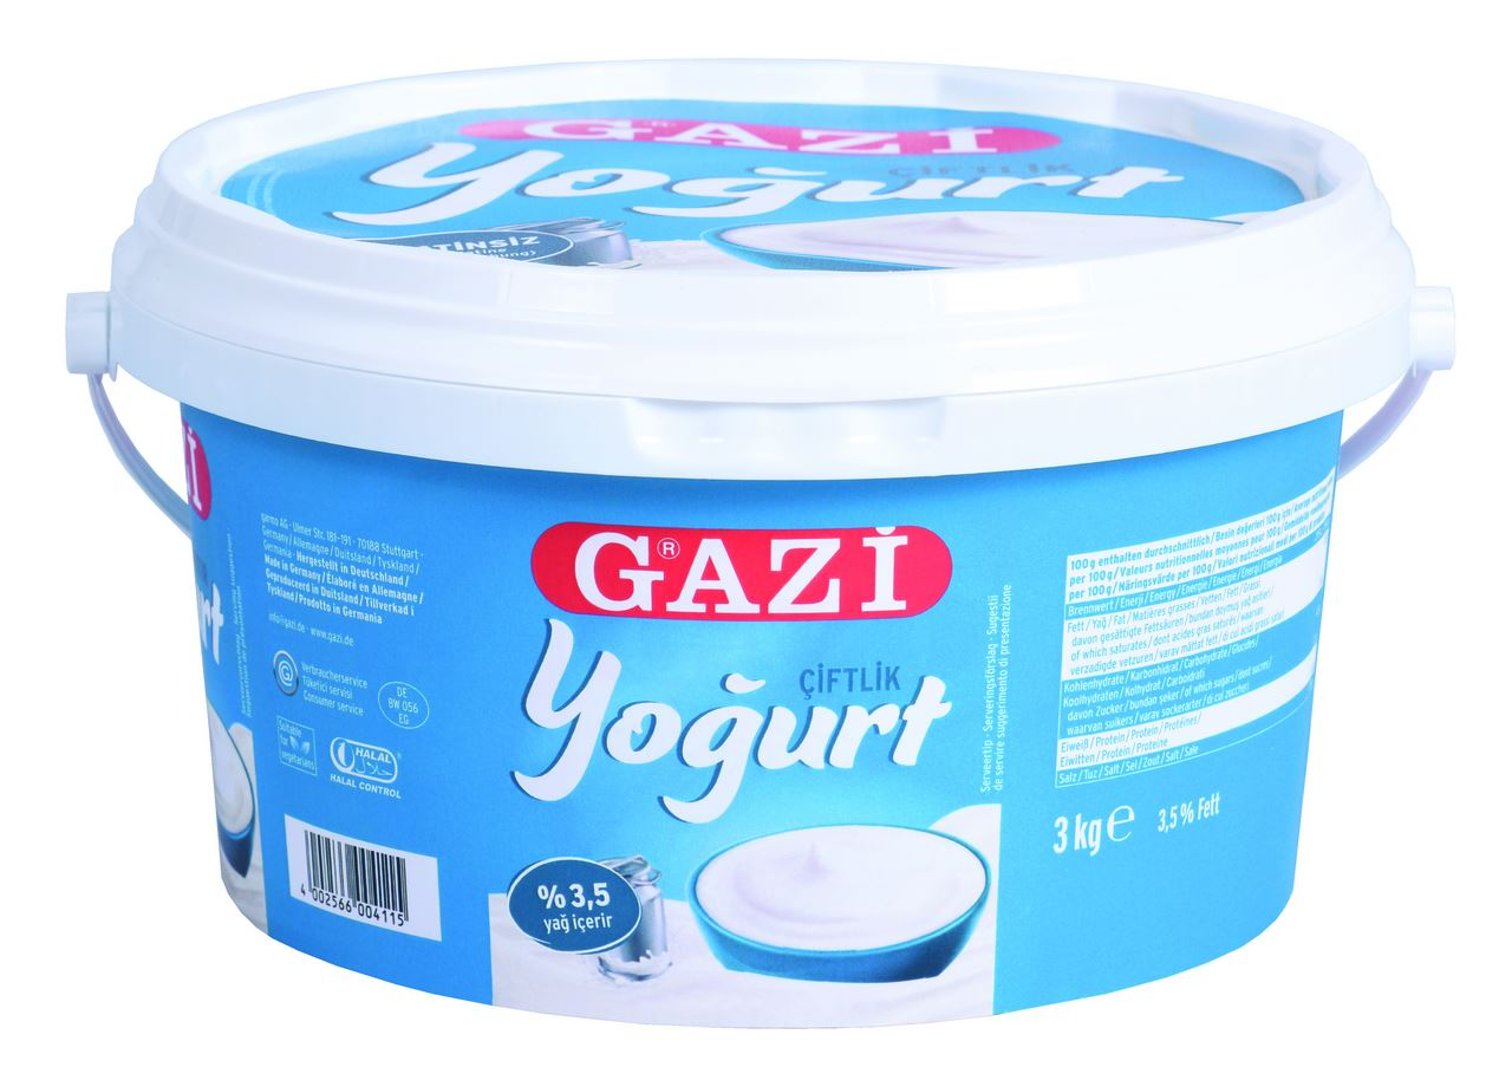 Gazi - Ciftlik Joghurt 3,5 % Fett 3 kg Eimer